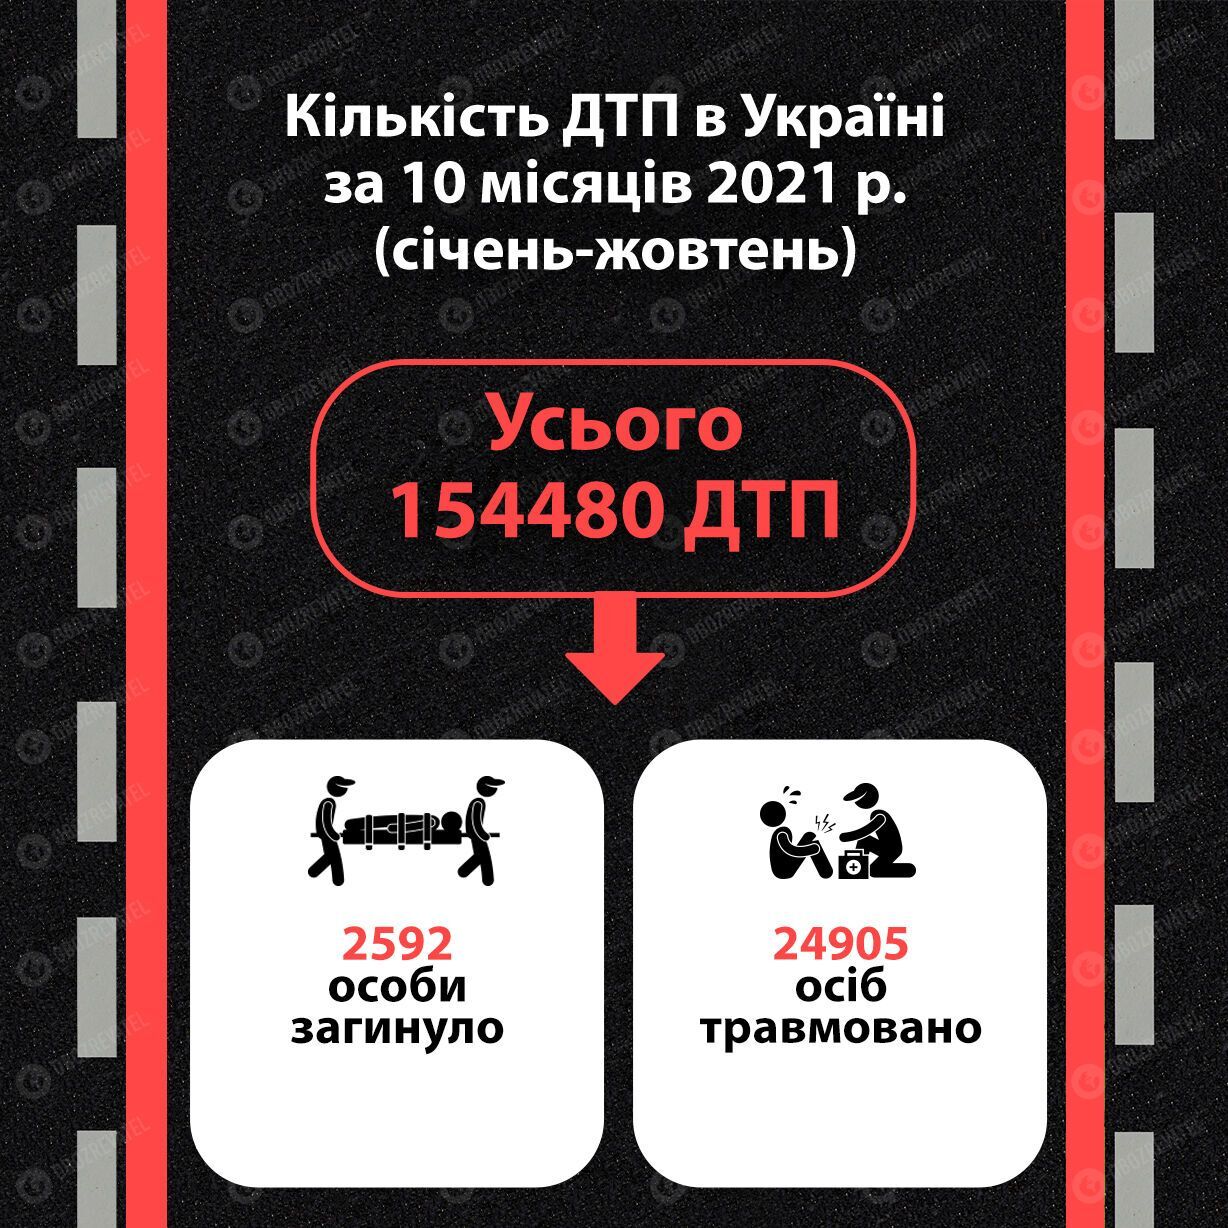 Общее количество ДТП в Украине за январь-октябрь 2021 года